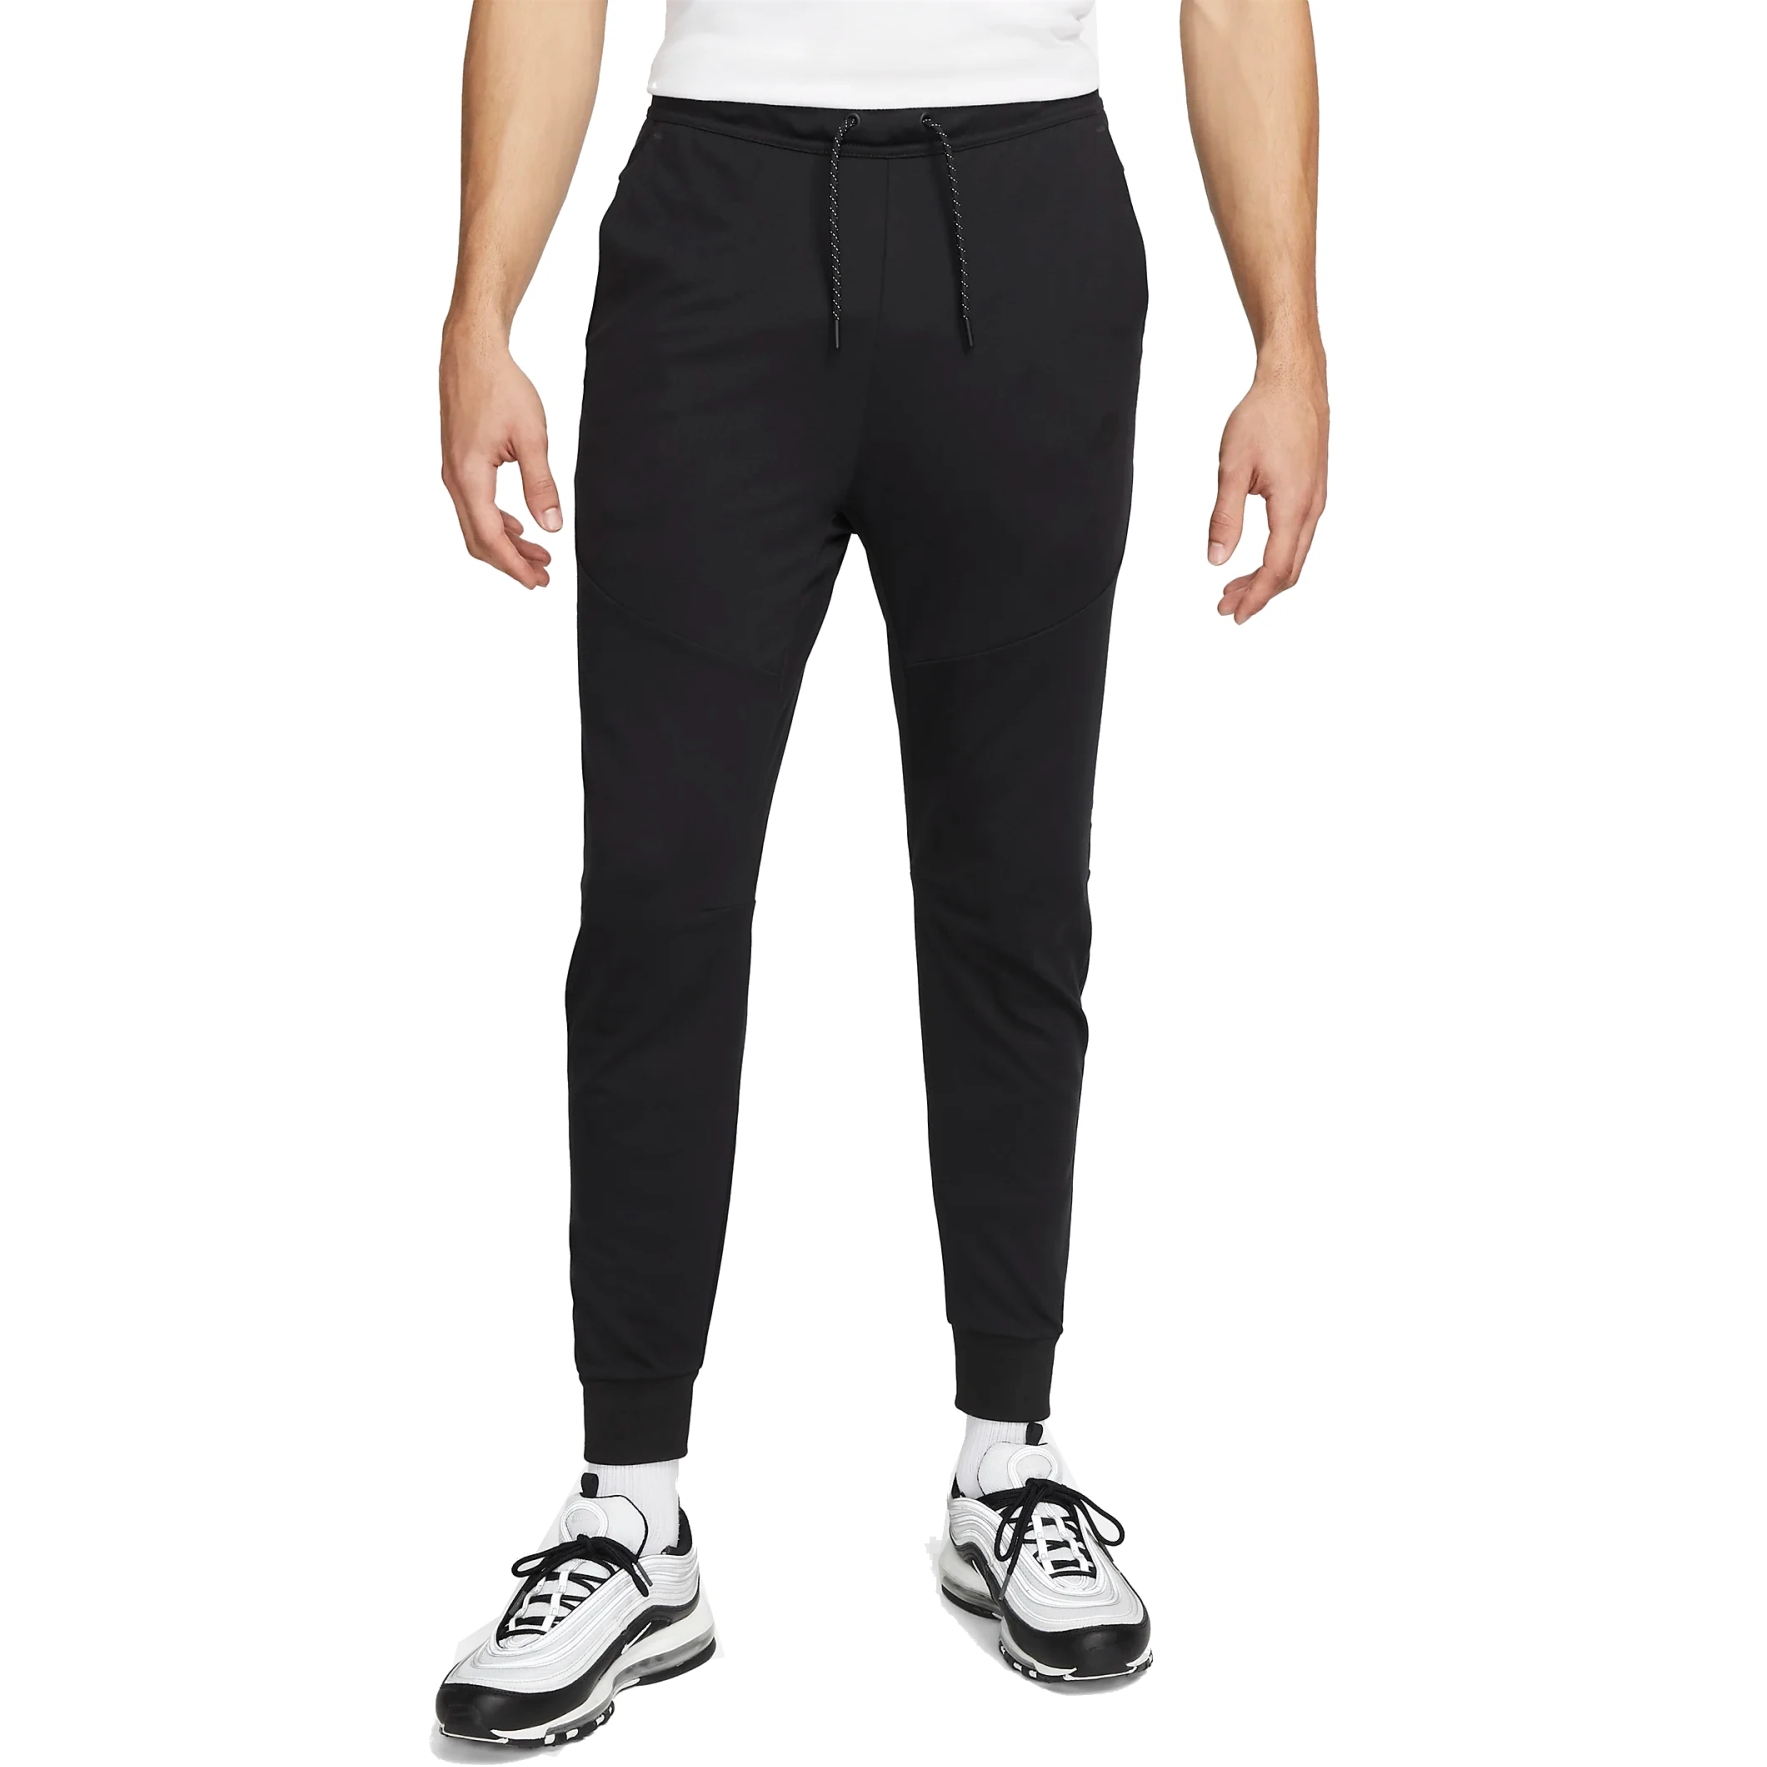 Produktbild von Nike Sportswear Tech Fleece Lightweight Hose für Herren - schwarz/schwarz DX0826-010